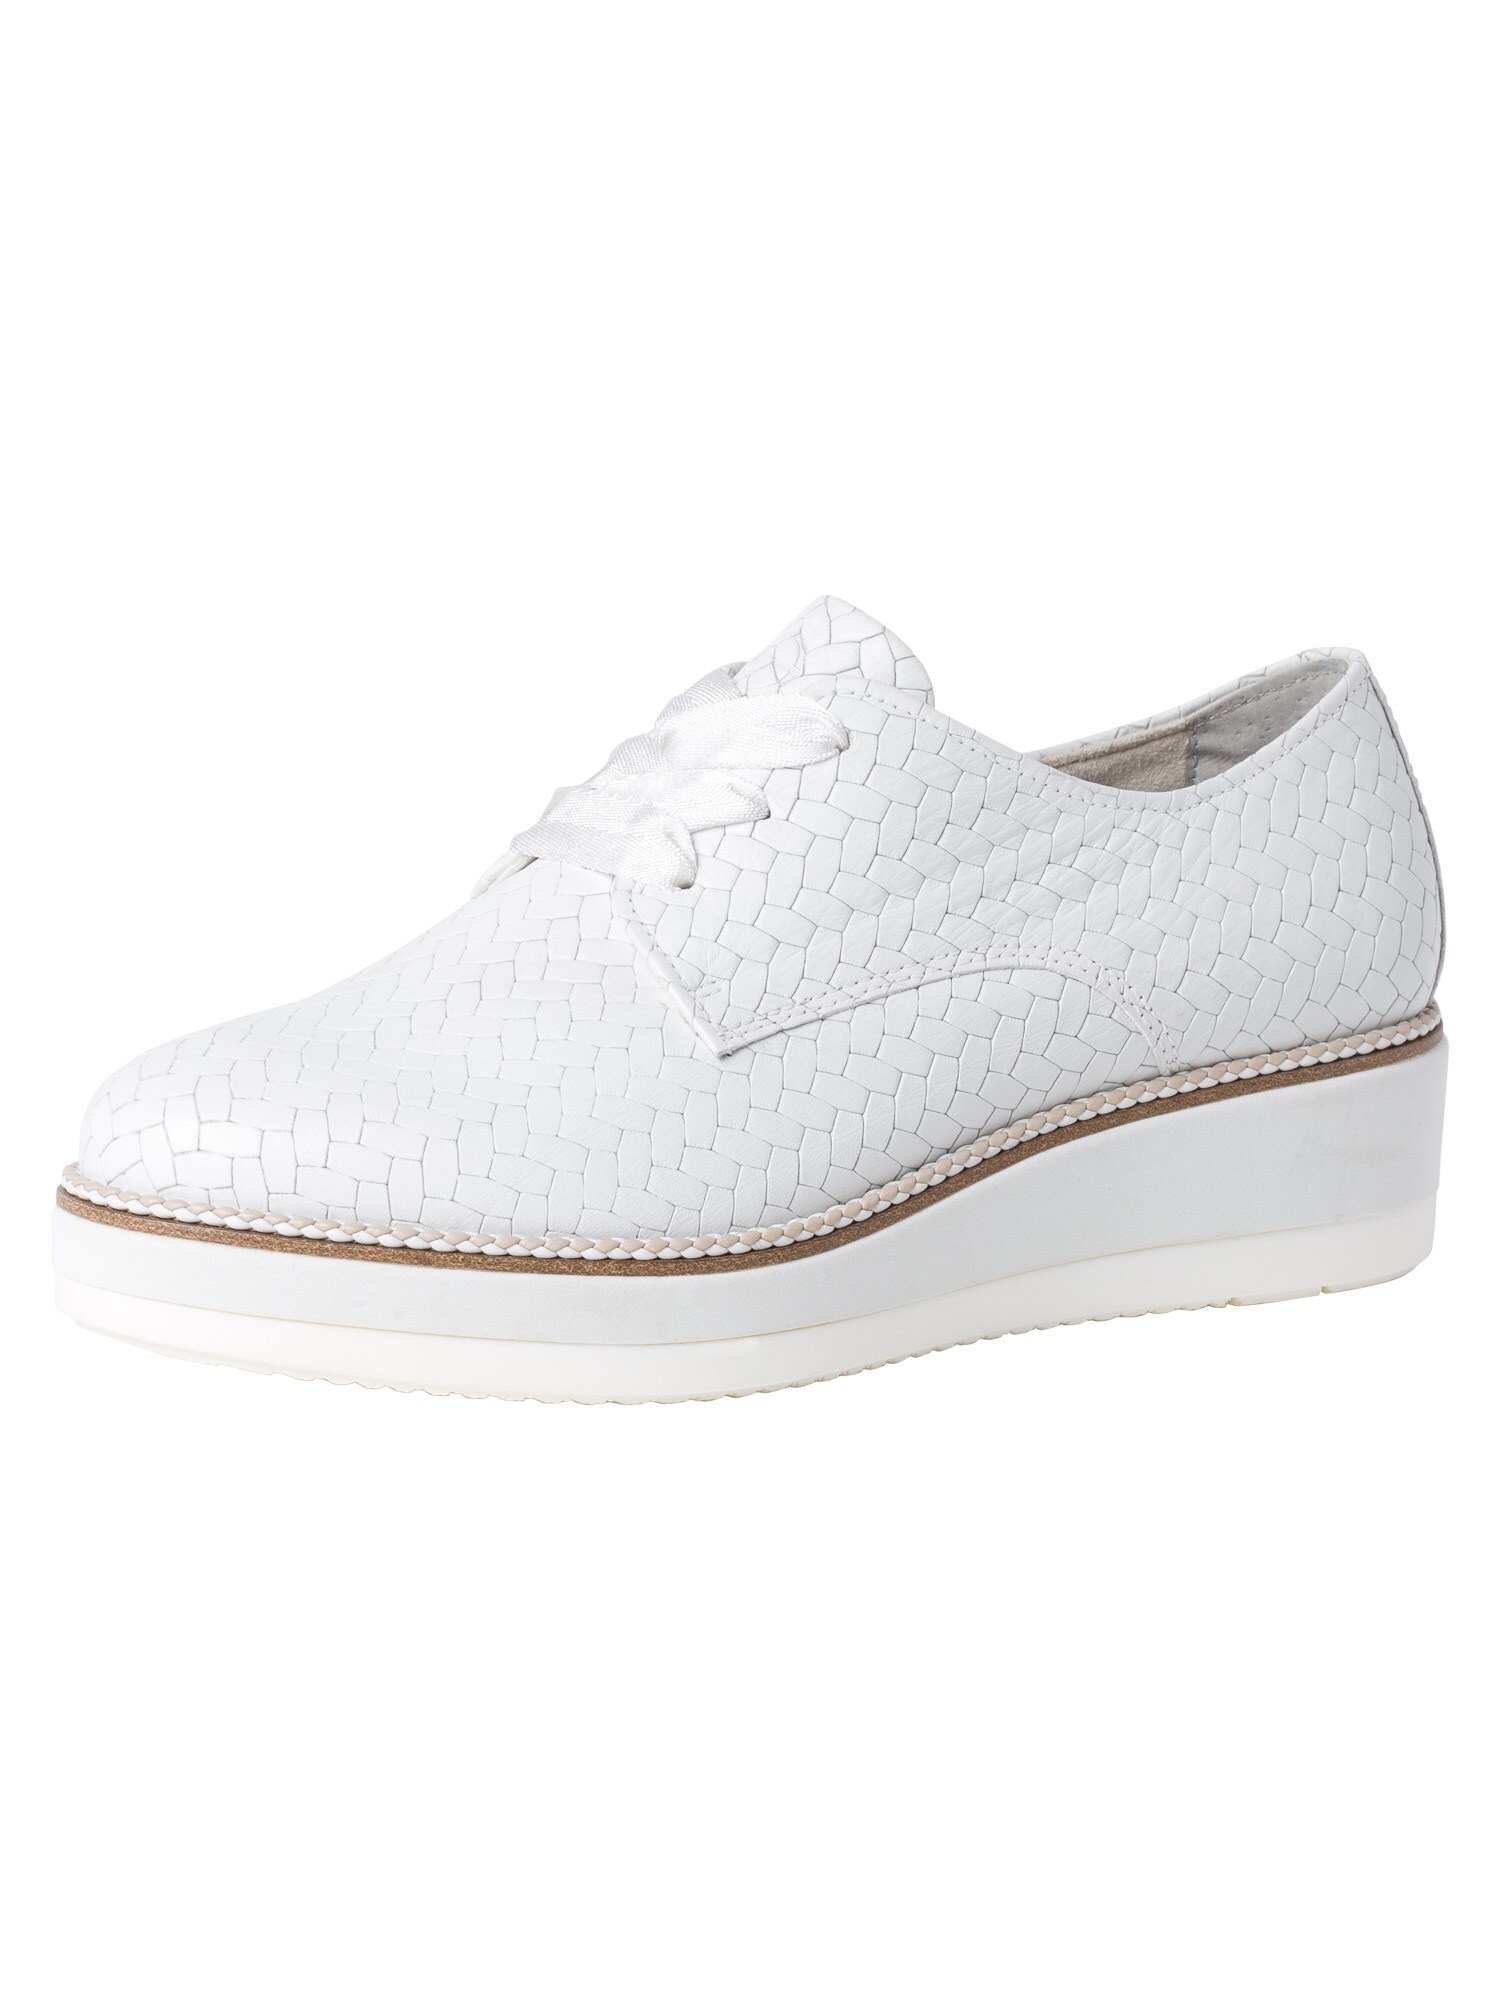 Tamaris Pure Relax Fűzős cipő  fehér